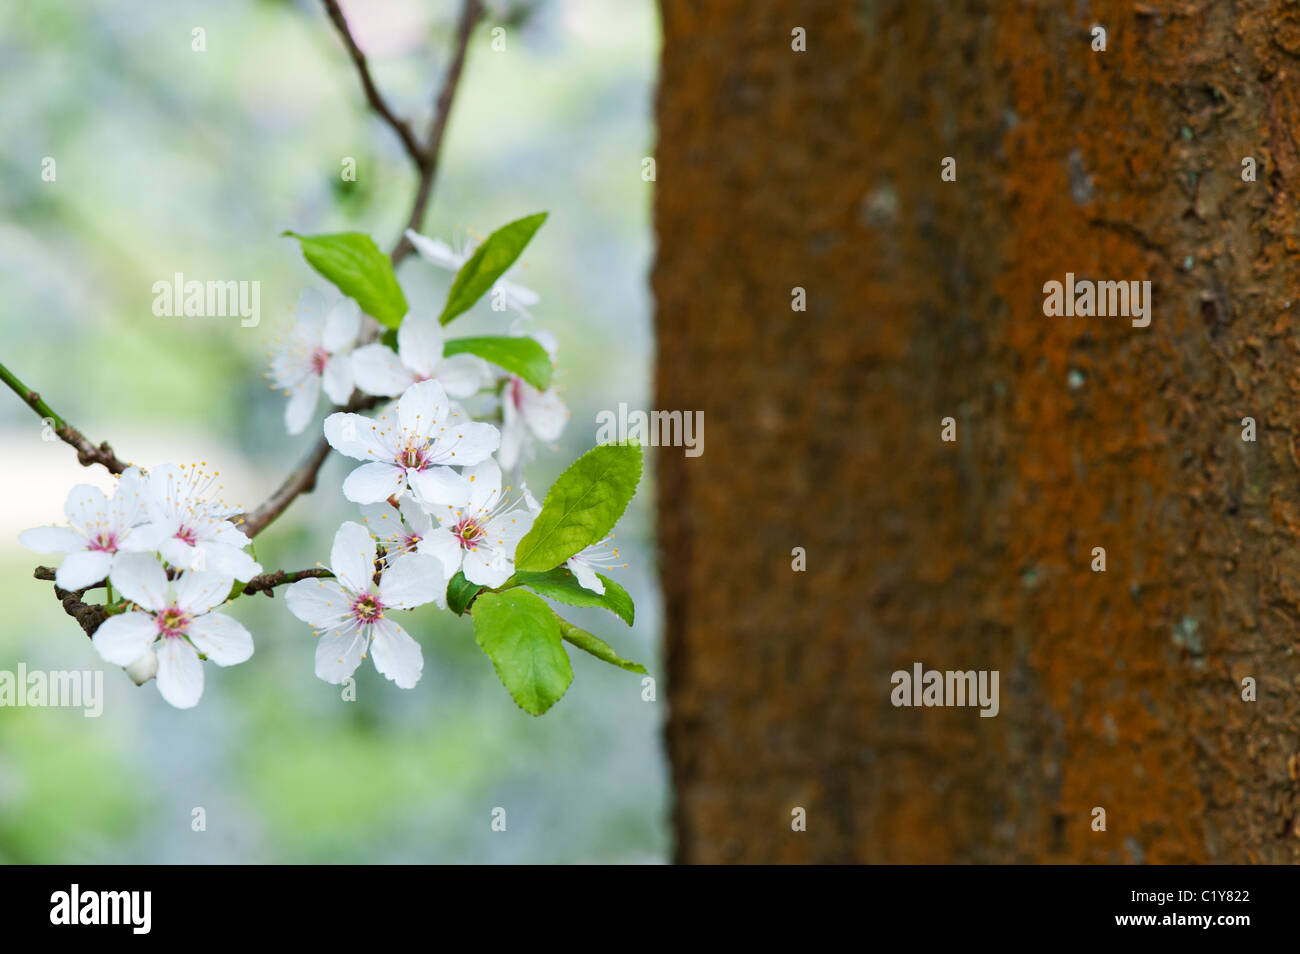 Prunus Cerasifera. Cherry plum. Cherry tree blossom Stock Photo